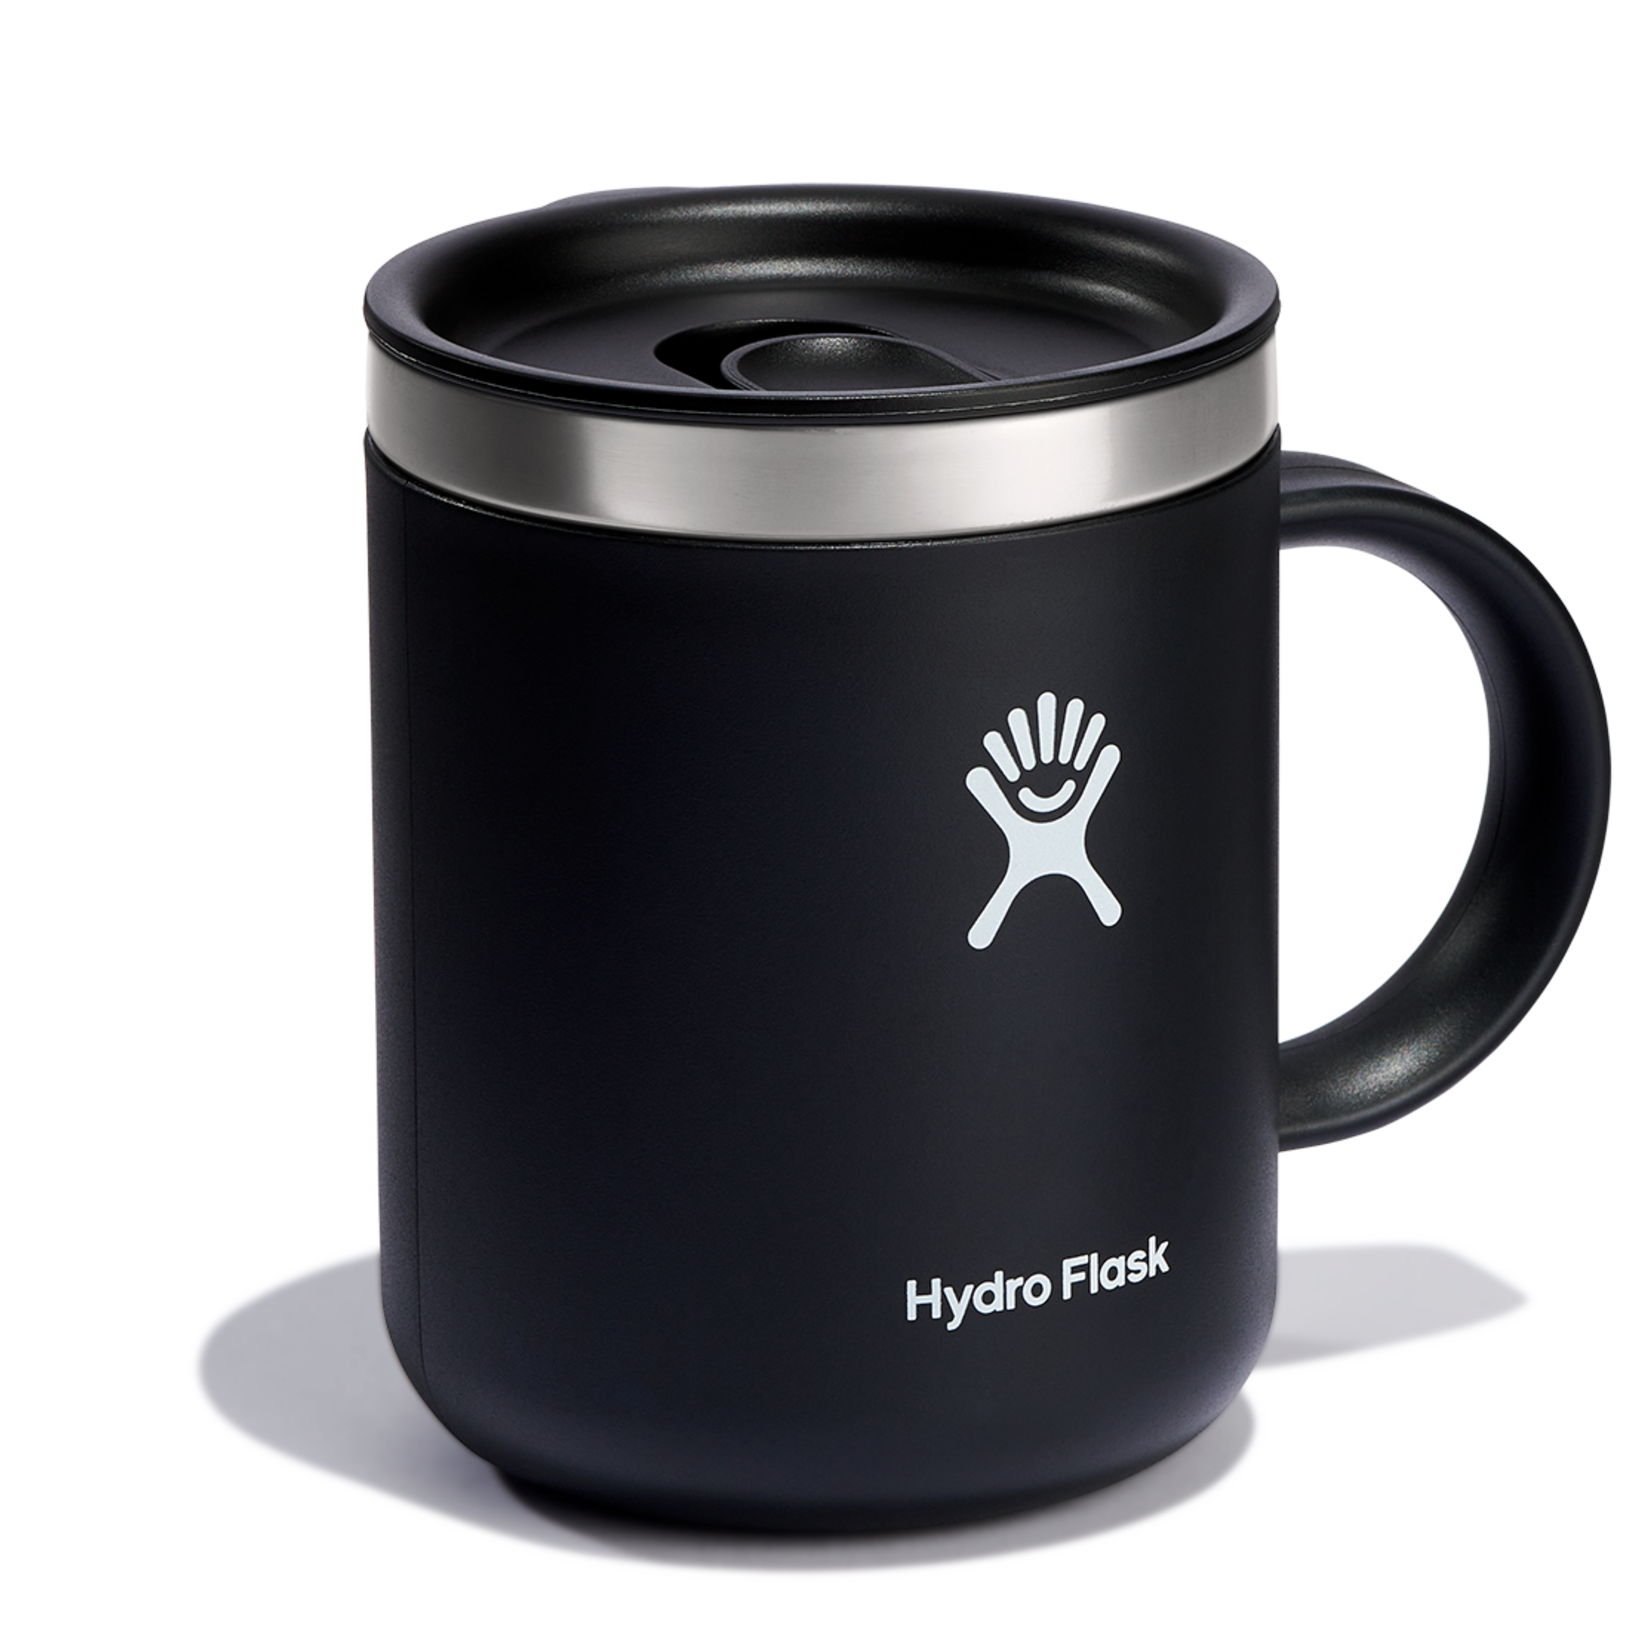 Hydro Flask Hydro Flask Cafe Mug Black  12oz